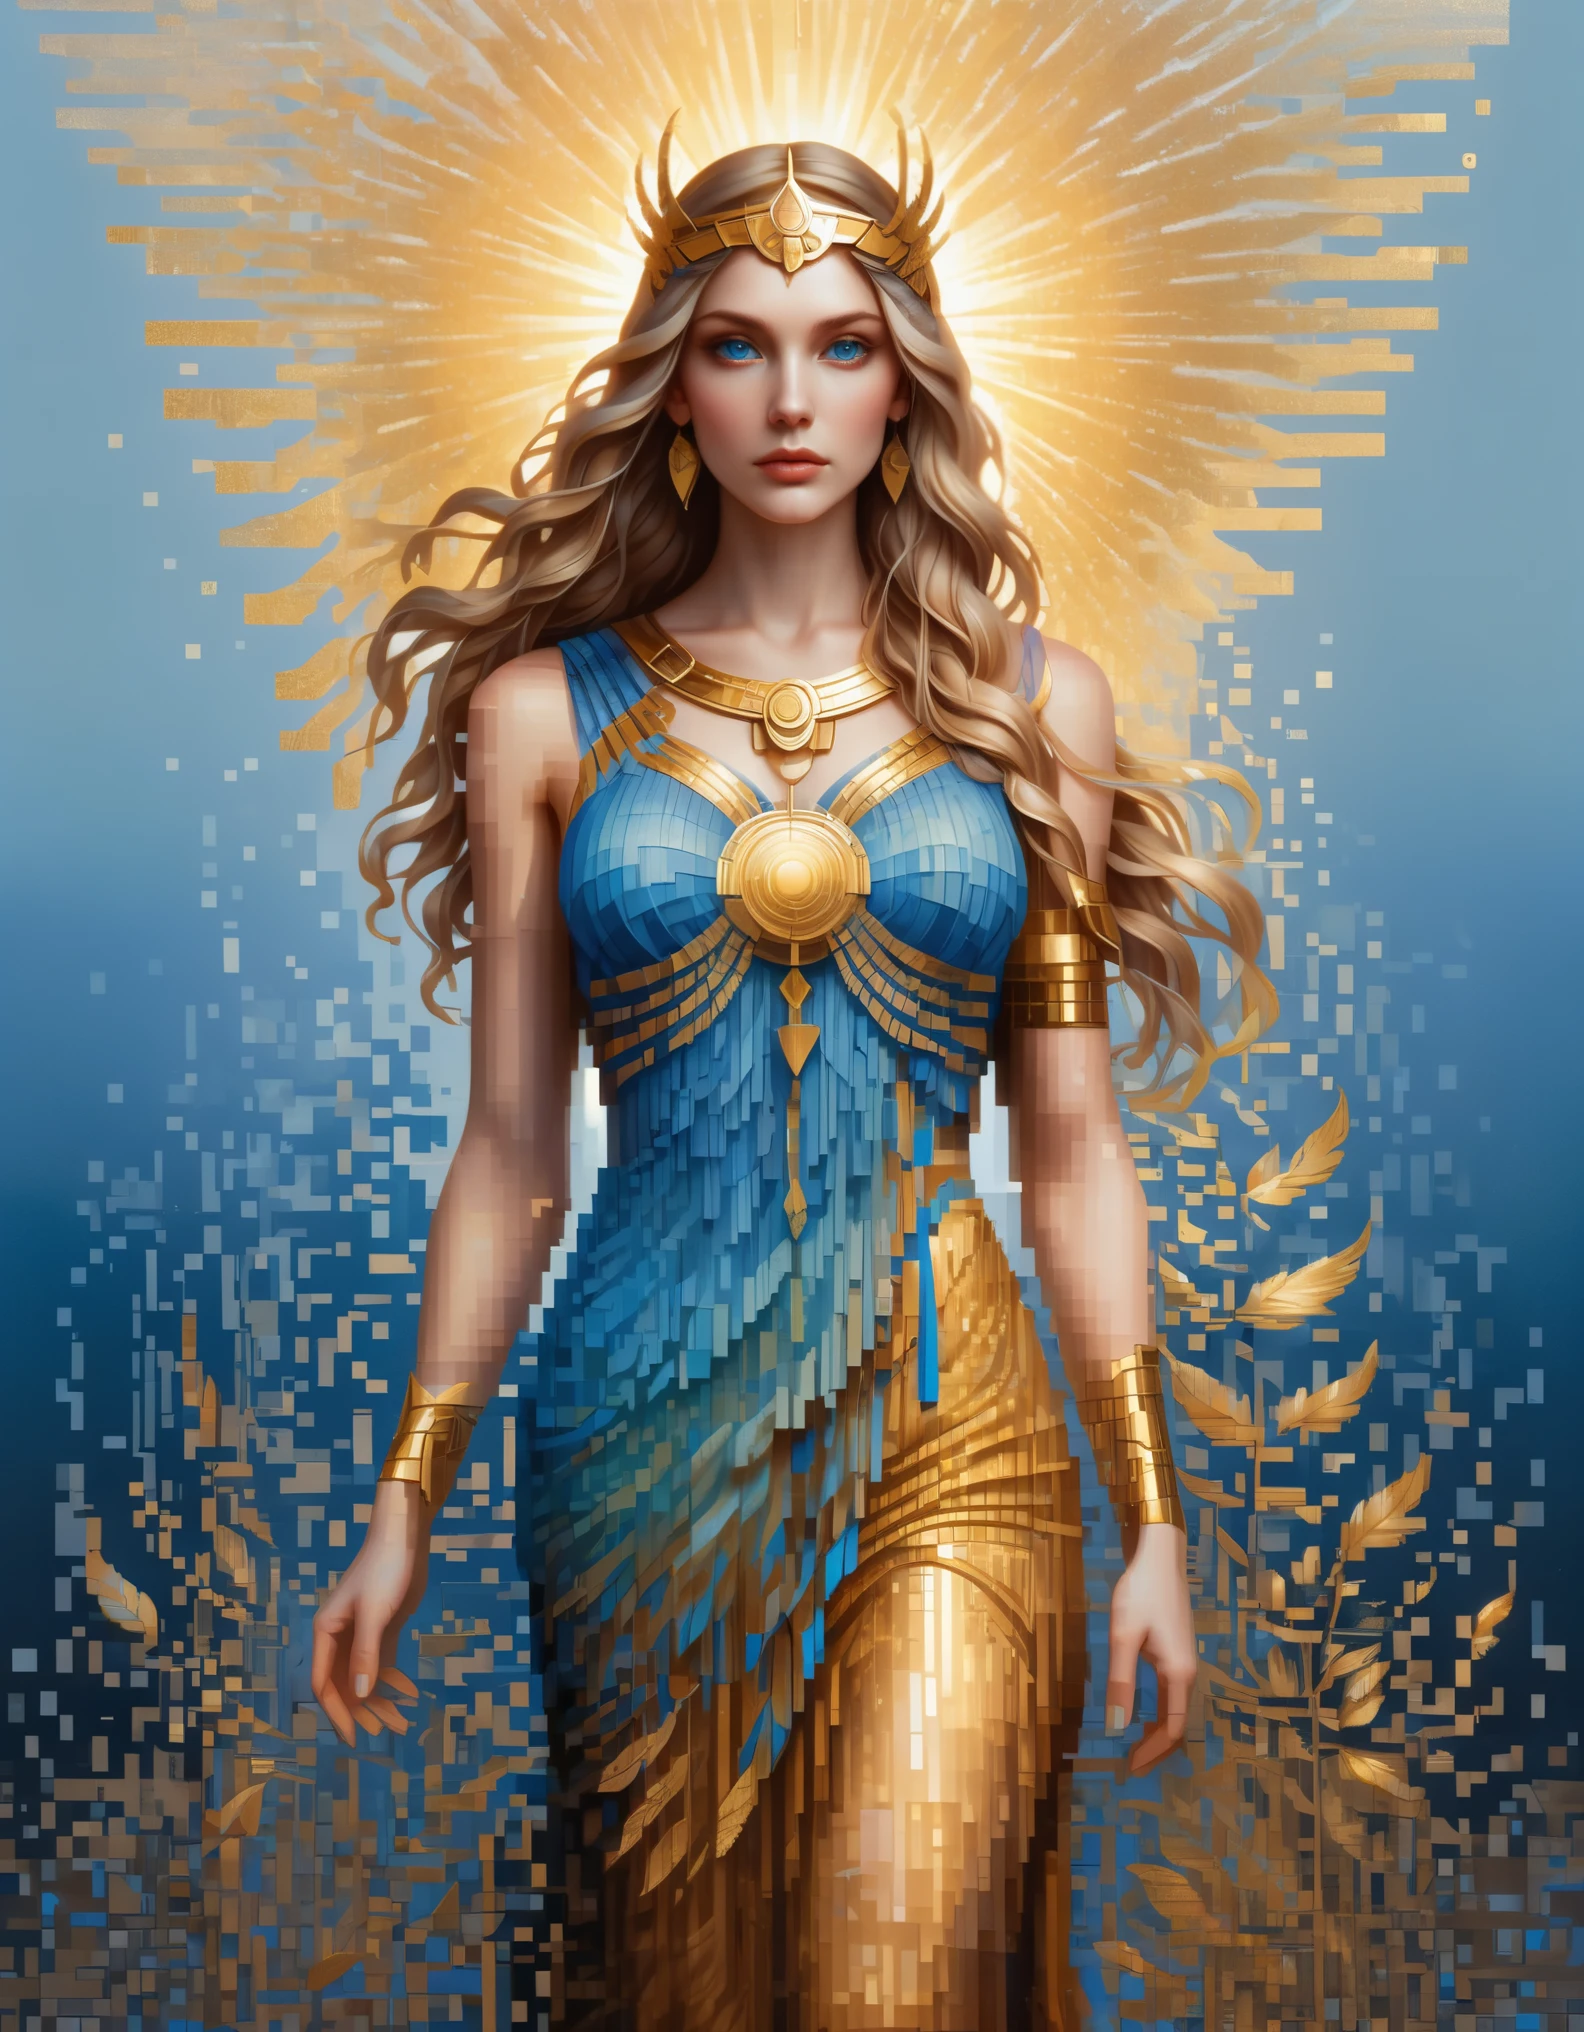 ドット絵，アマンダ・セージ風, 美しいディテール，溶解したピクセルの青いグラデーションカラーの美しい女神アテナ，（全身），非常に美しい青い目，徐々に分解する，黄金の太陽が輝く，水面の部分的な反射，